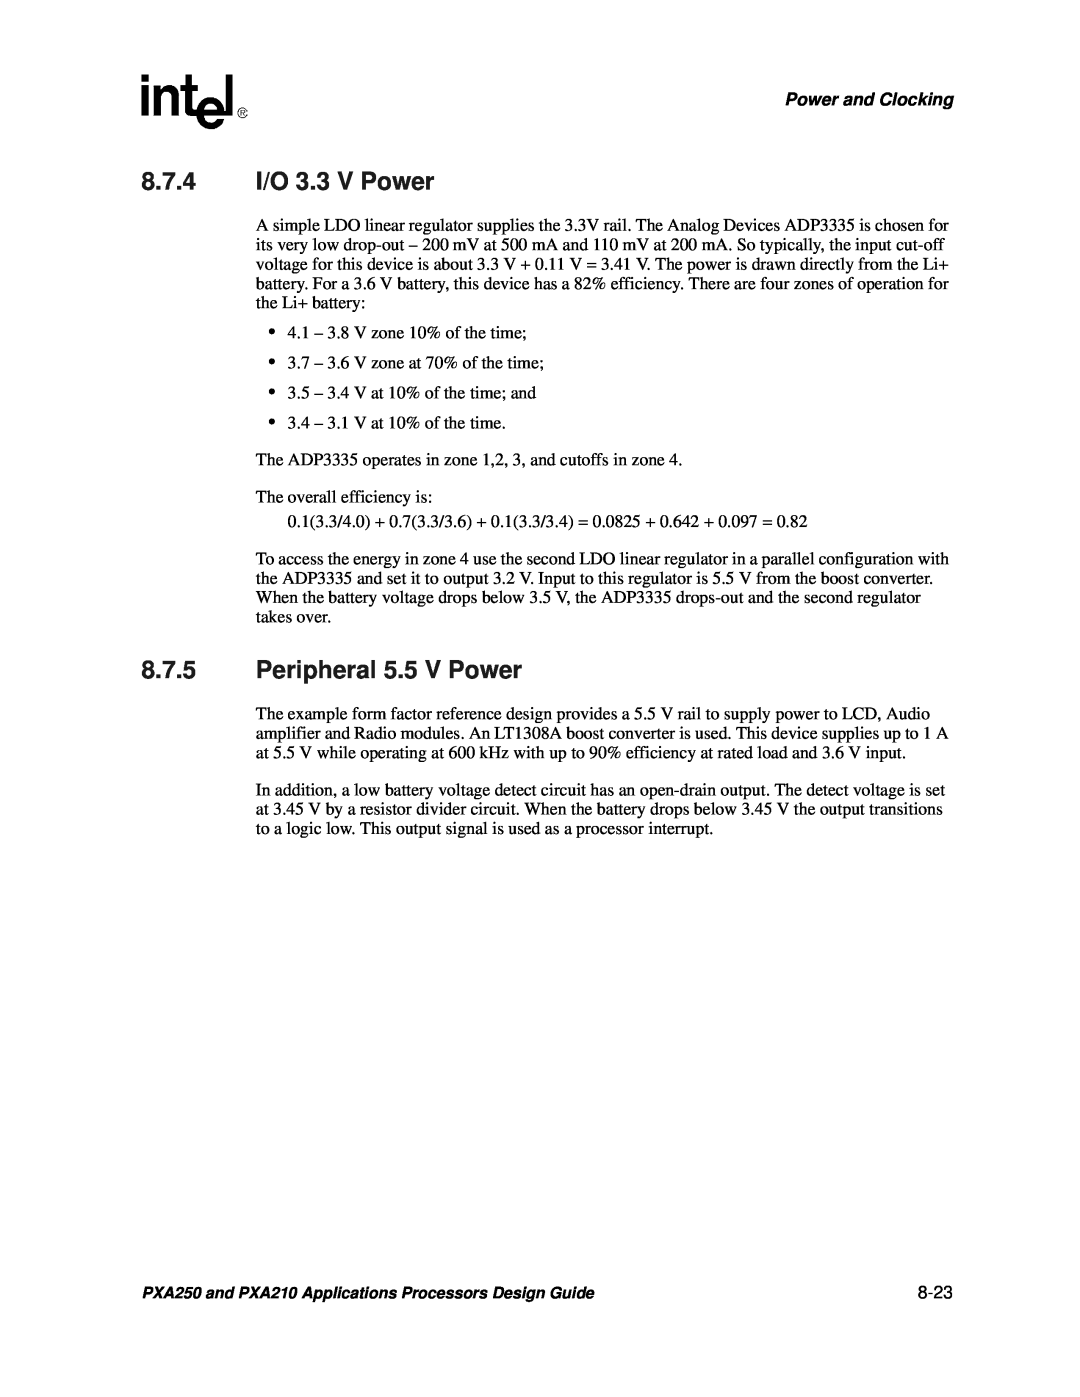 Intel PXA250 and PXA210 manual 8.7.4 I/O 3.3 V Power, Peripheral 5.5 V Power, Power and Clocking, 8-23 